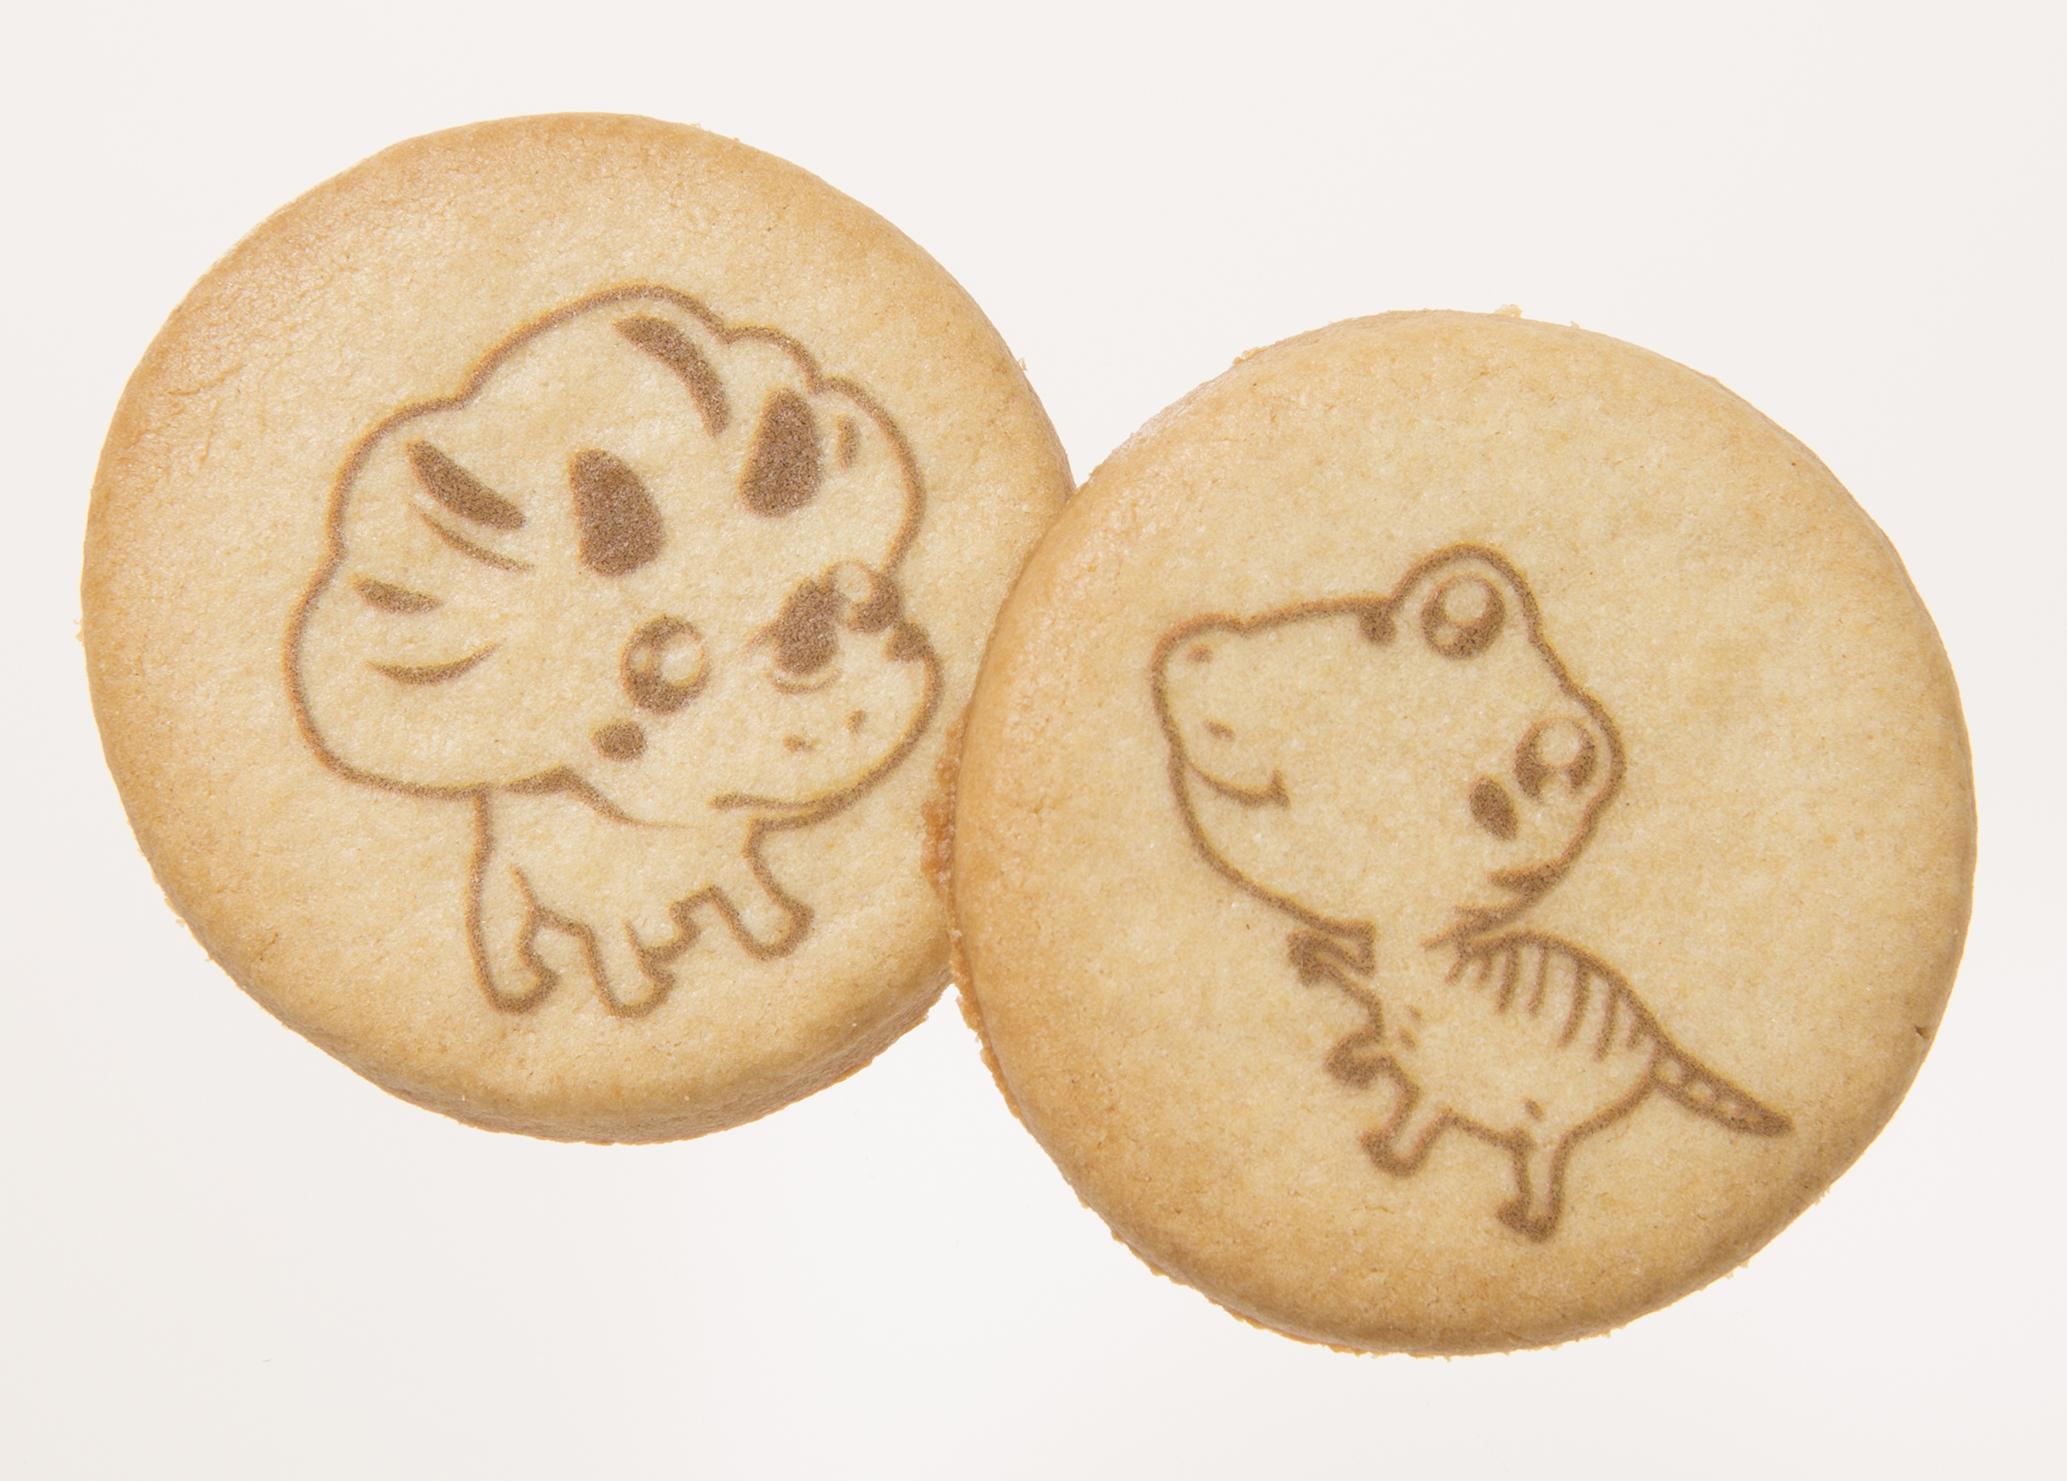 福井のおいしいもの情報 大人も盛り上がるつぶらな瞳の 恐竜クッキー 食品 食材 フード レシピ Mart マート 公式サイト 光文社